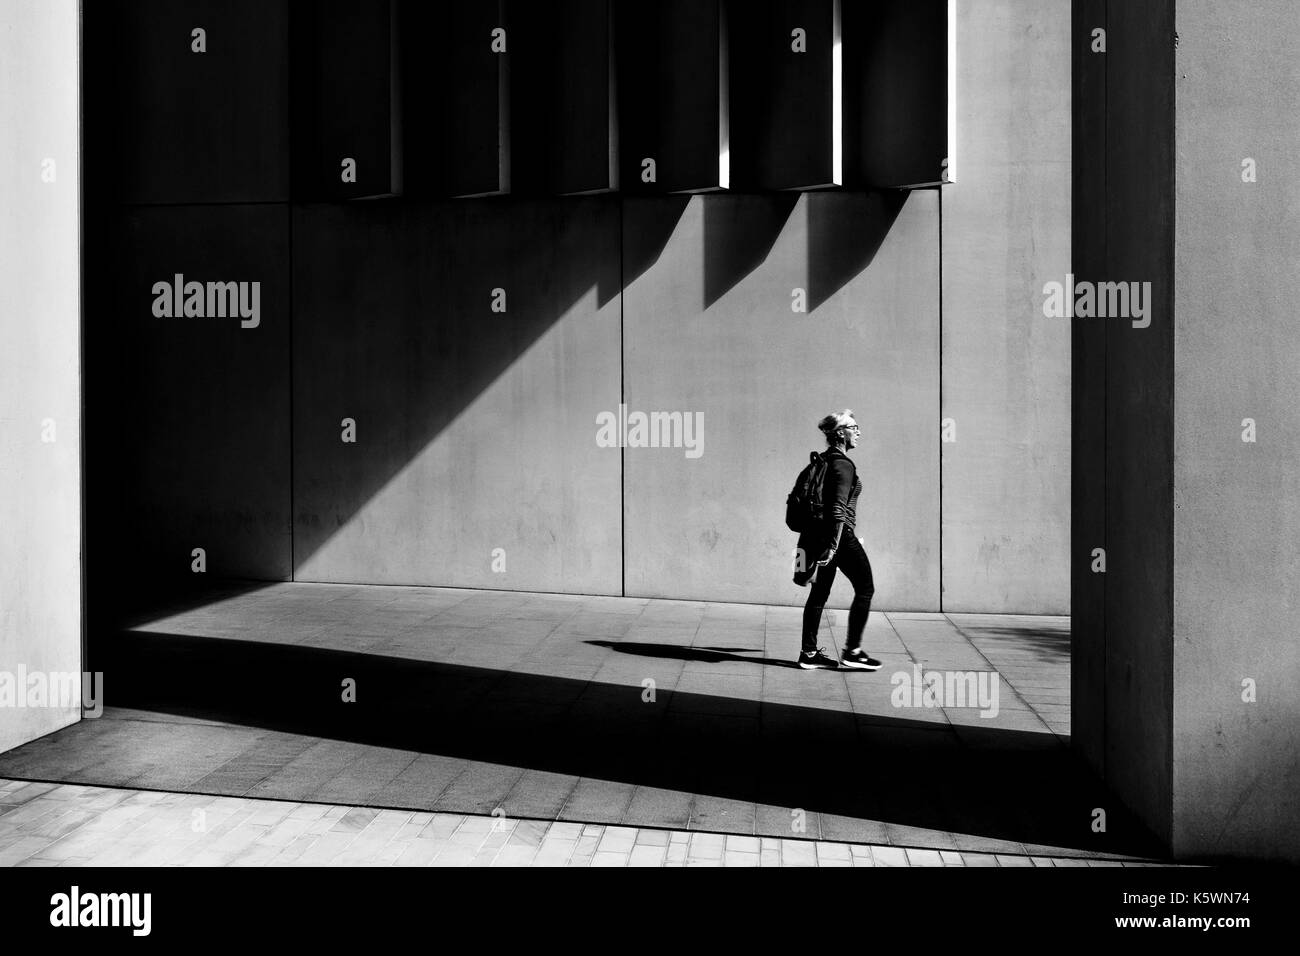 Londra in bianco e nero street photography: ombra e luce in contemporanea ambiente urbano, London, Regno Unito Foto Stock